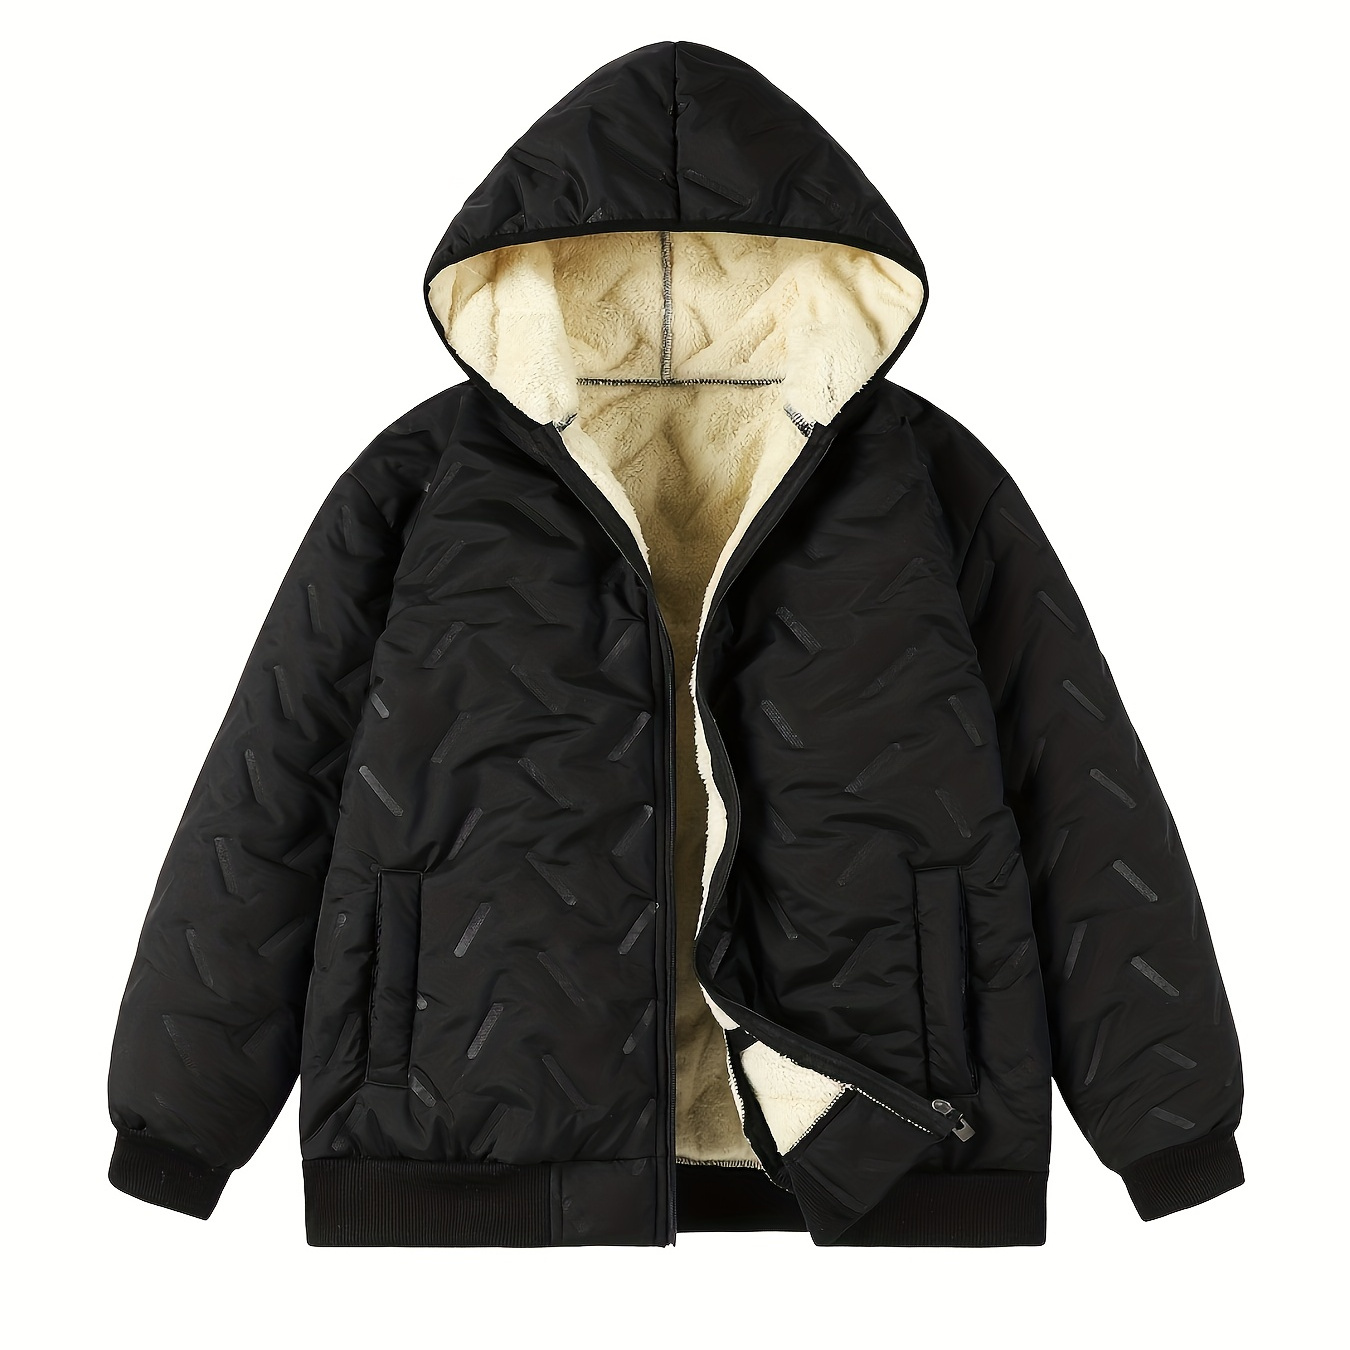 

Men's Lined Hooded Fleece Jacket, Men's Warm Tops For Autumn Winter